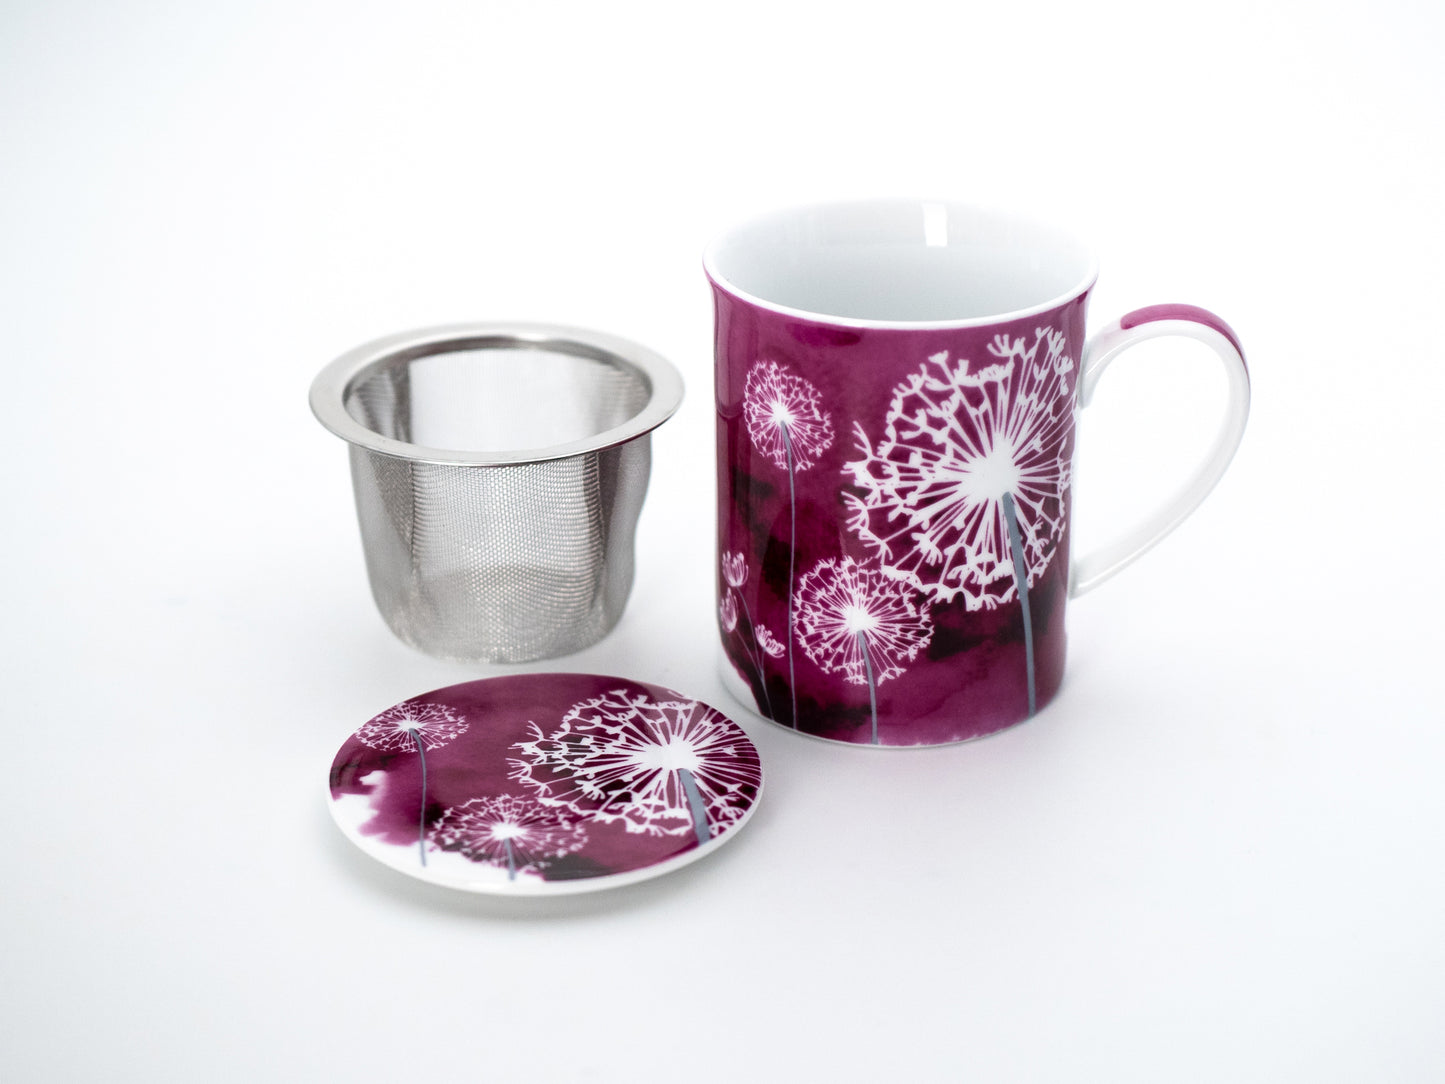 Pink dandelion porcelain infuser mug and lid with stainless steel infuser basket